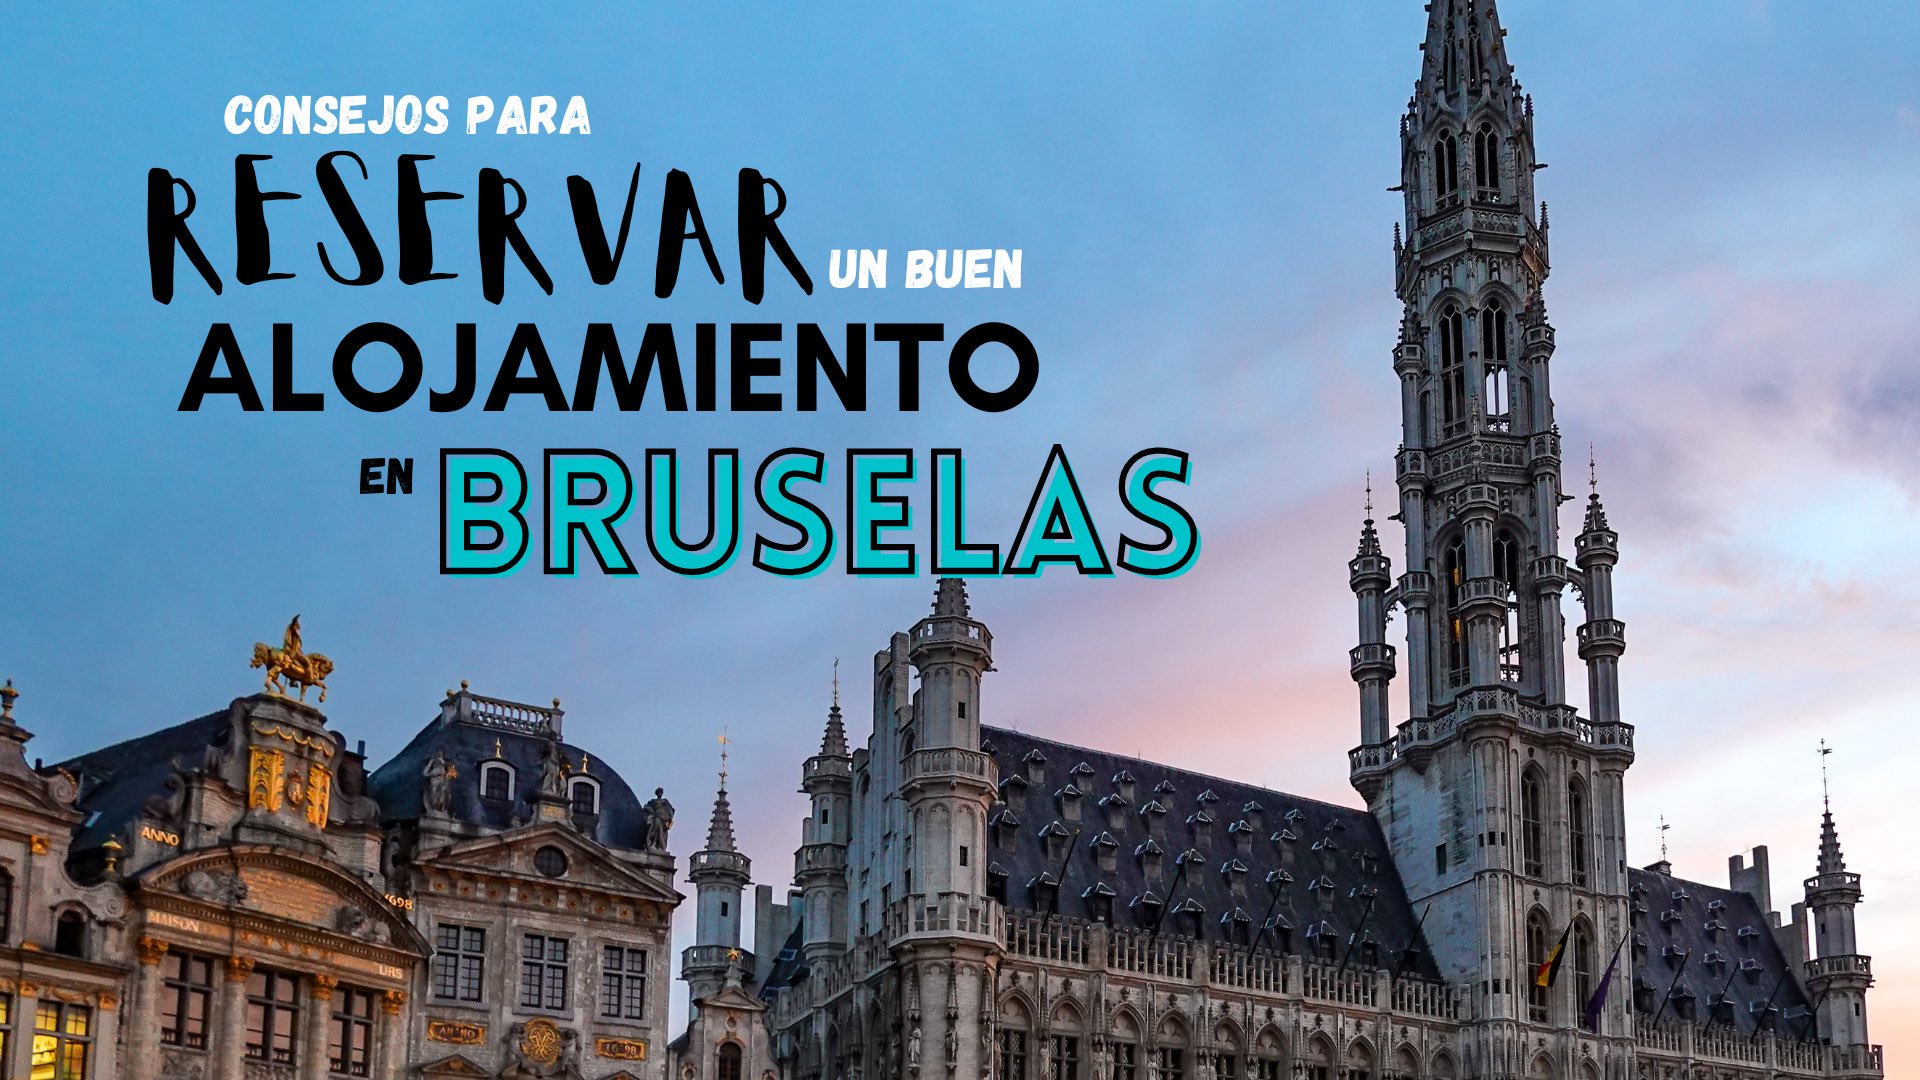 Consejos para reservar un buen alojamiento en Bruselas | www.pasaporteandonos.com